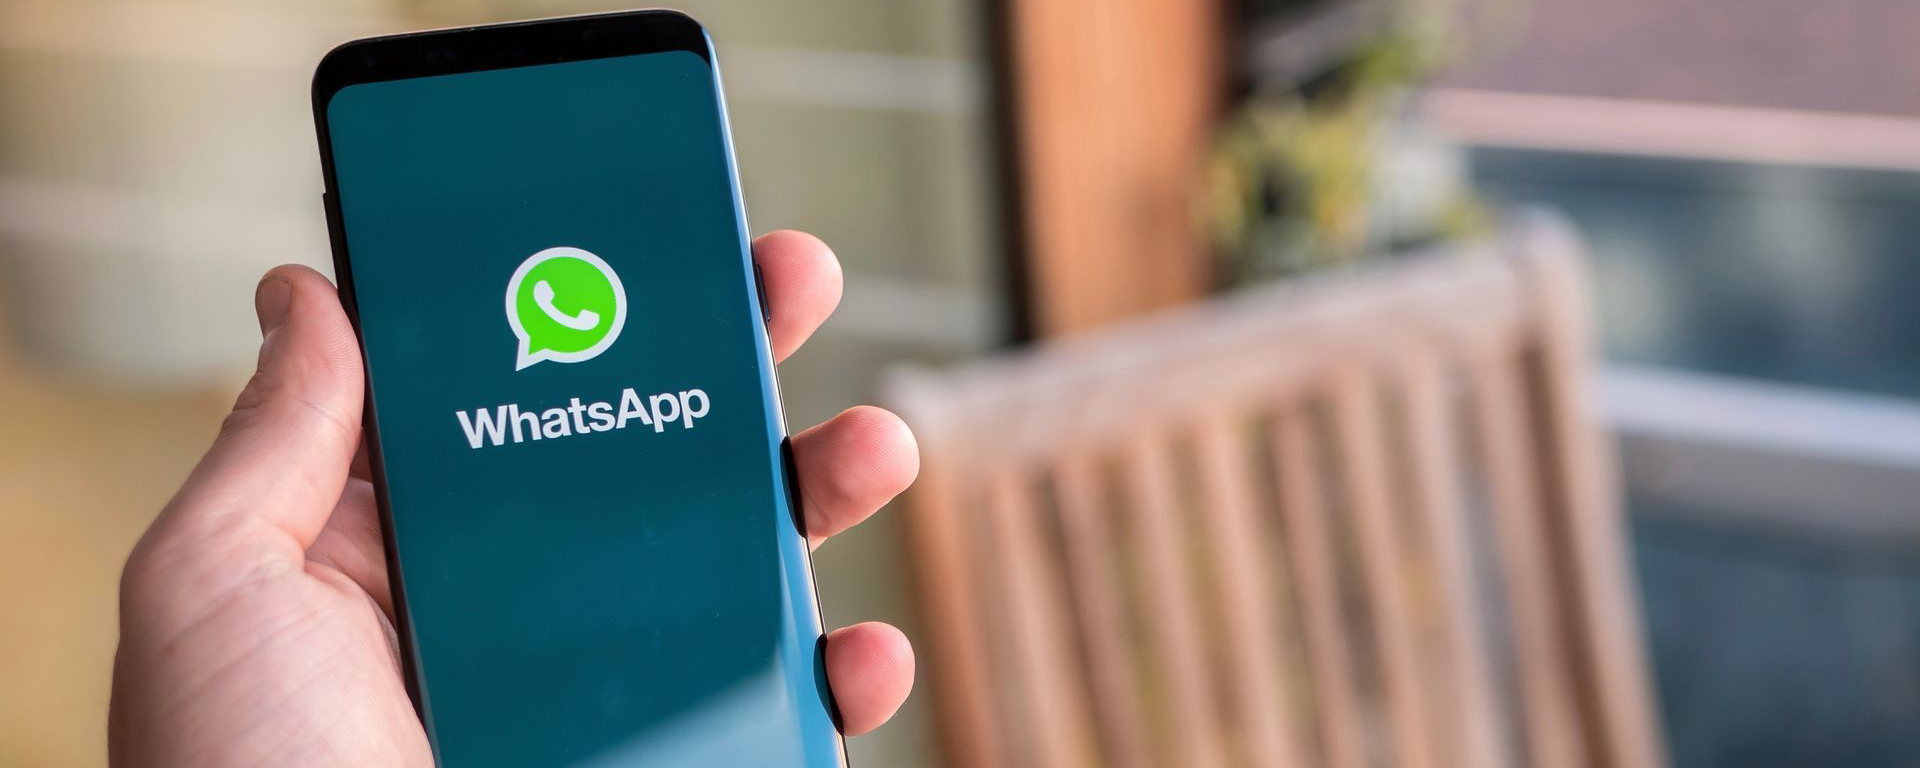 WhatsApp после обновления начнет самостоятельно отключать уведомления